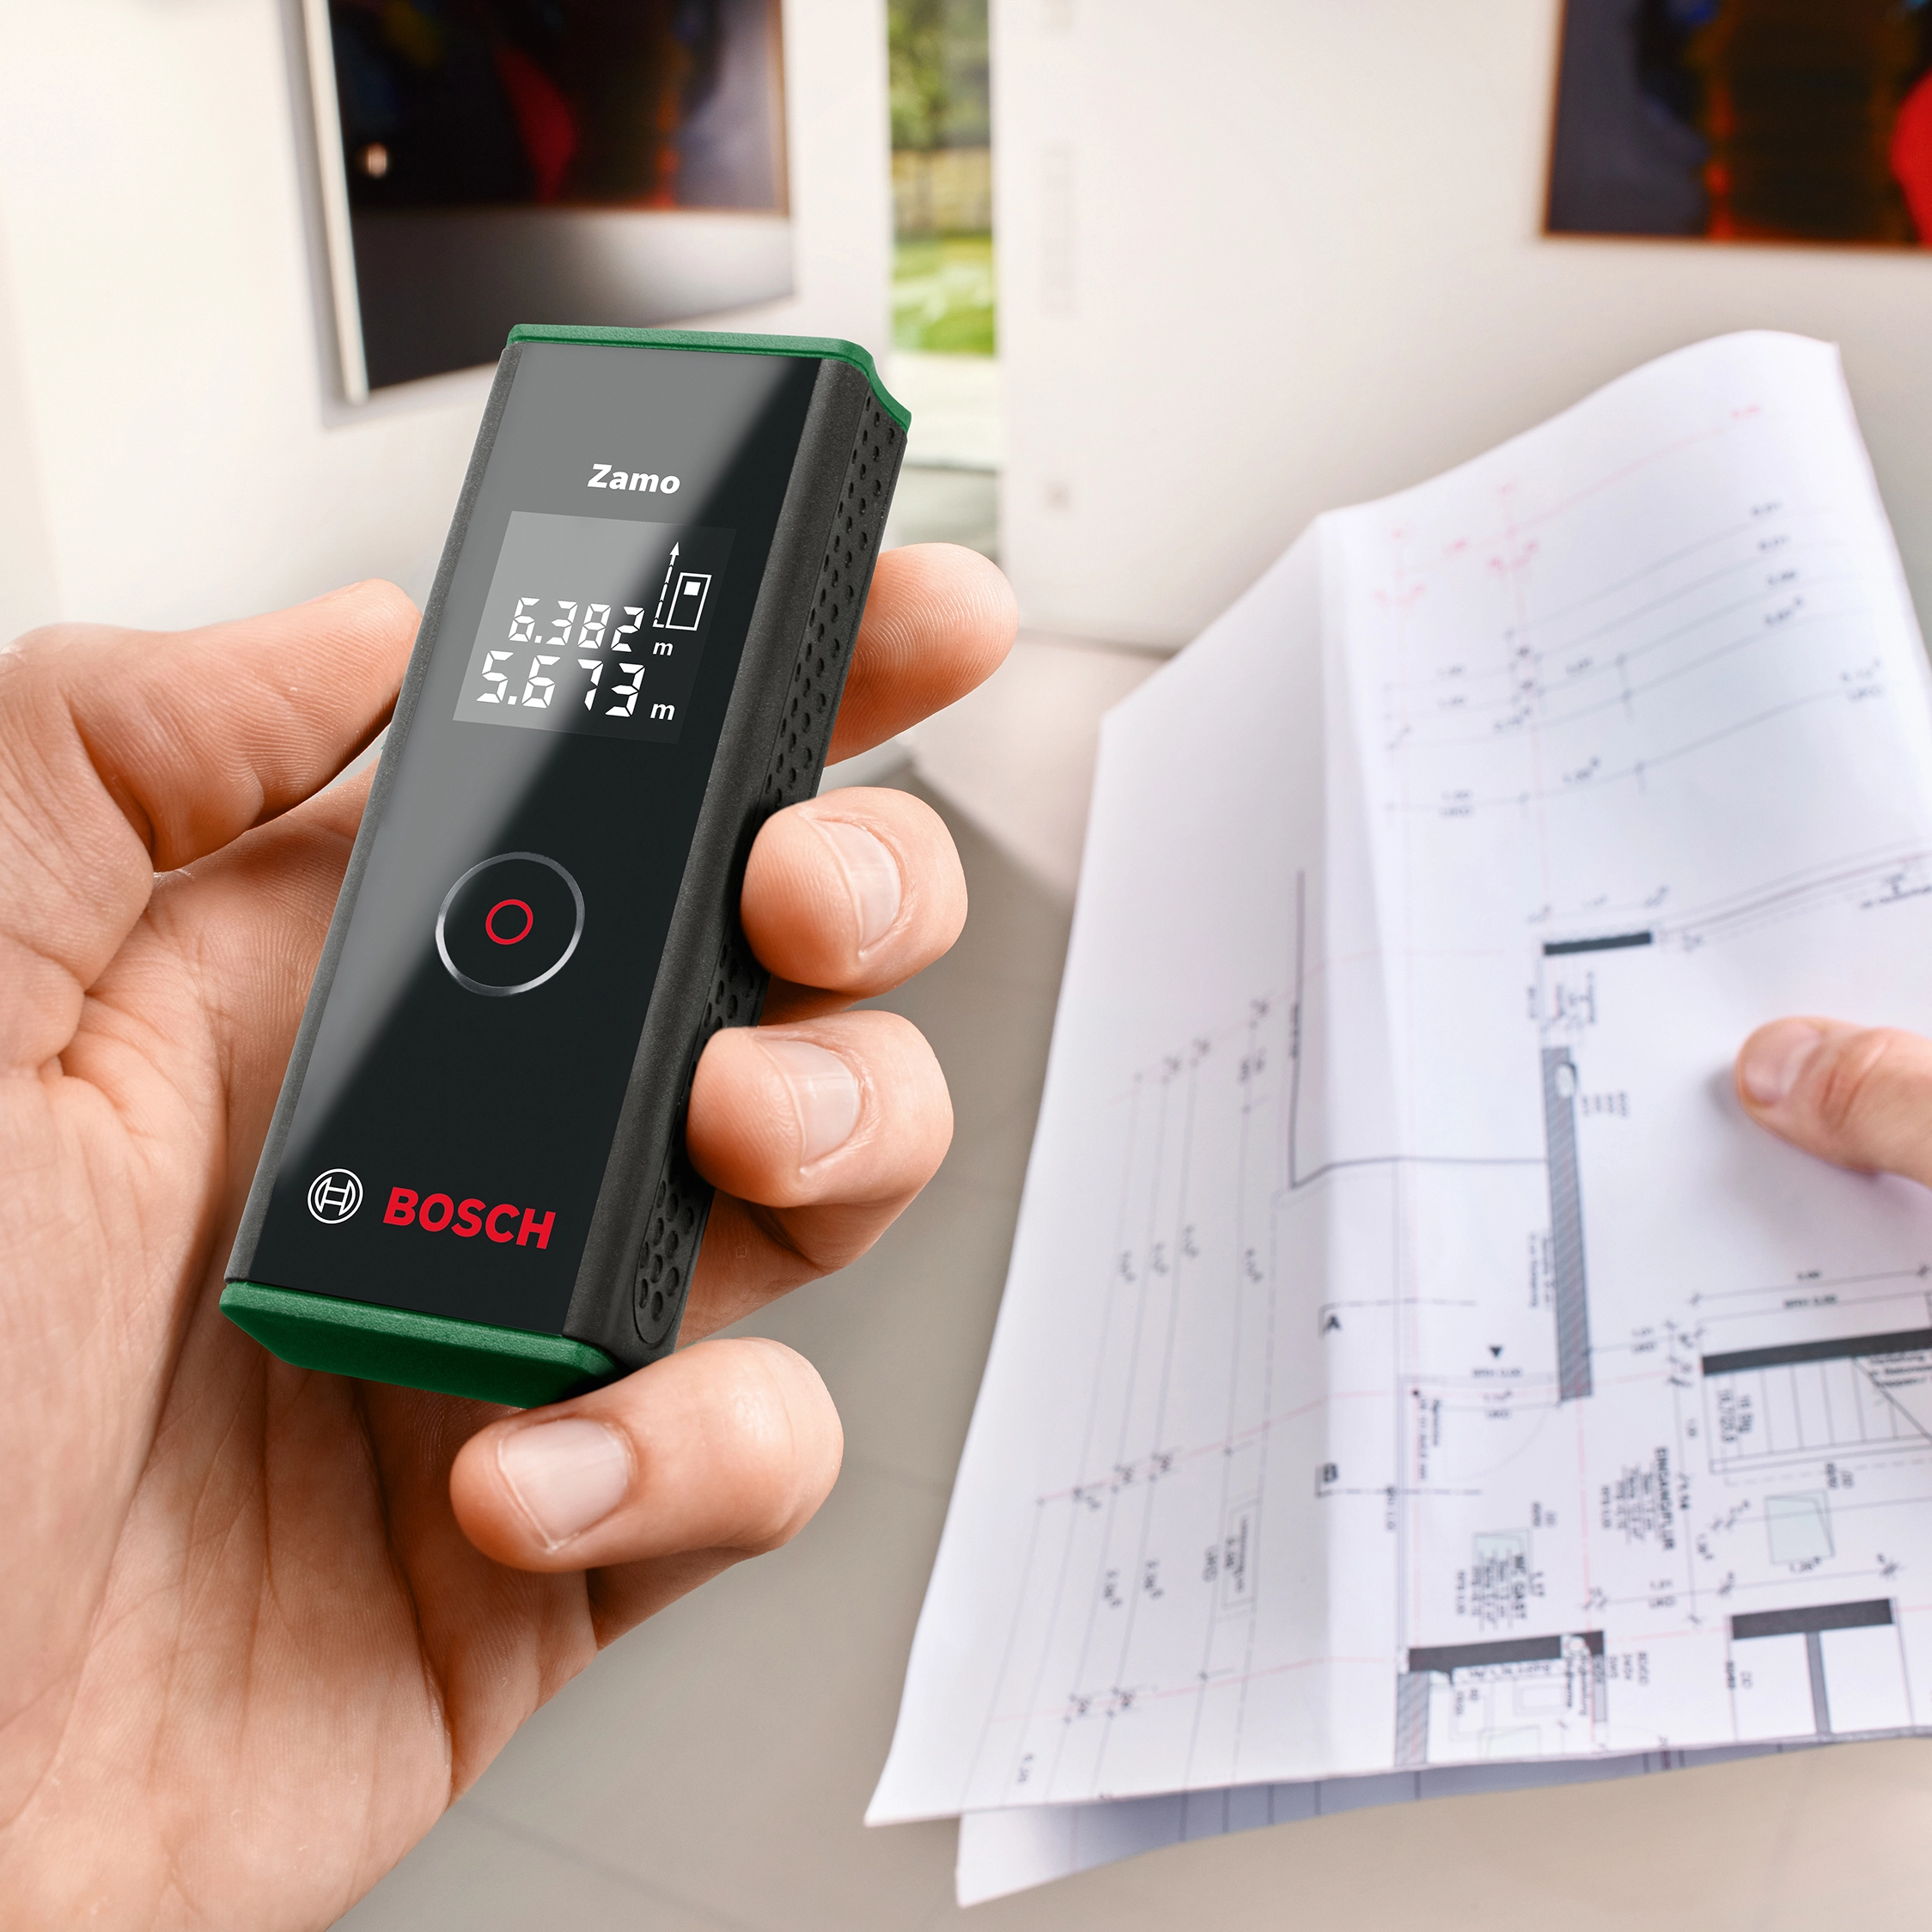 Bosch Zamo 4 Télémètre laser numérique acheter